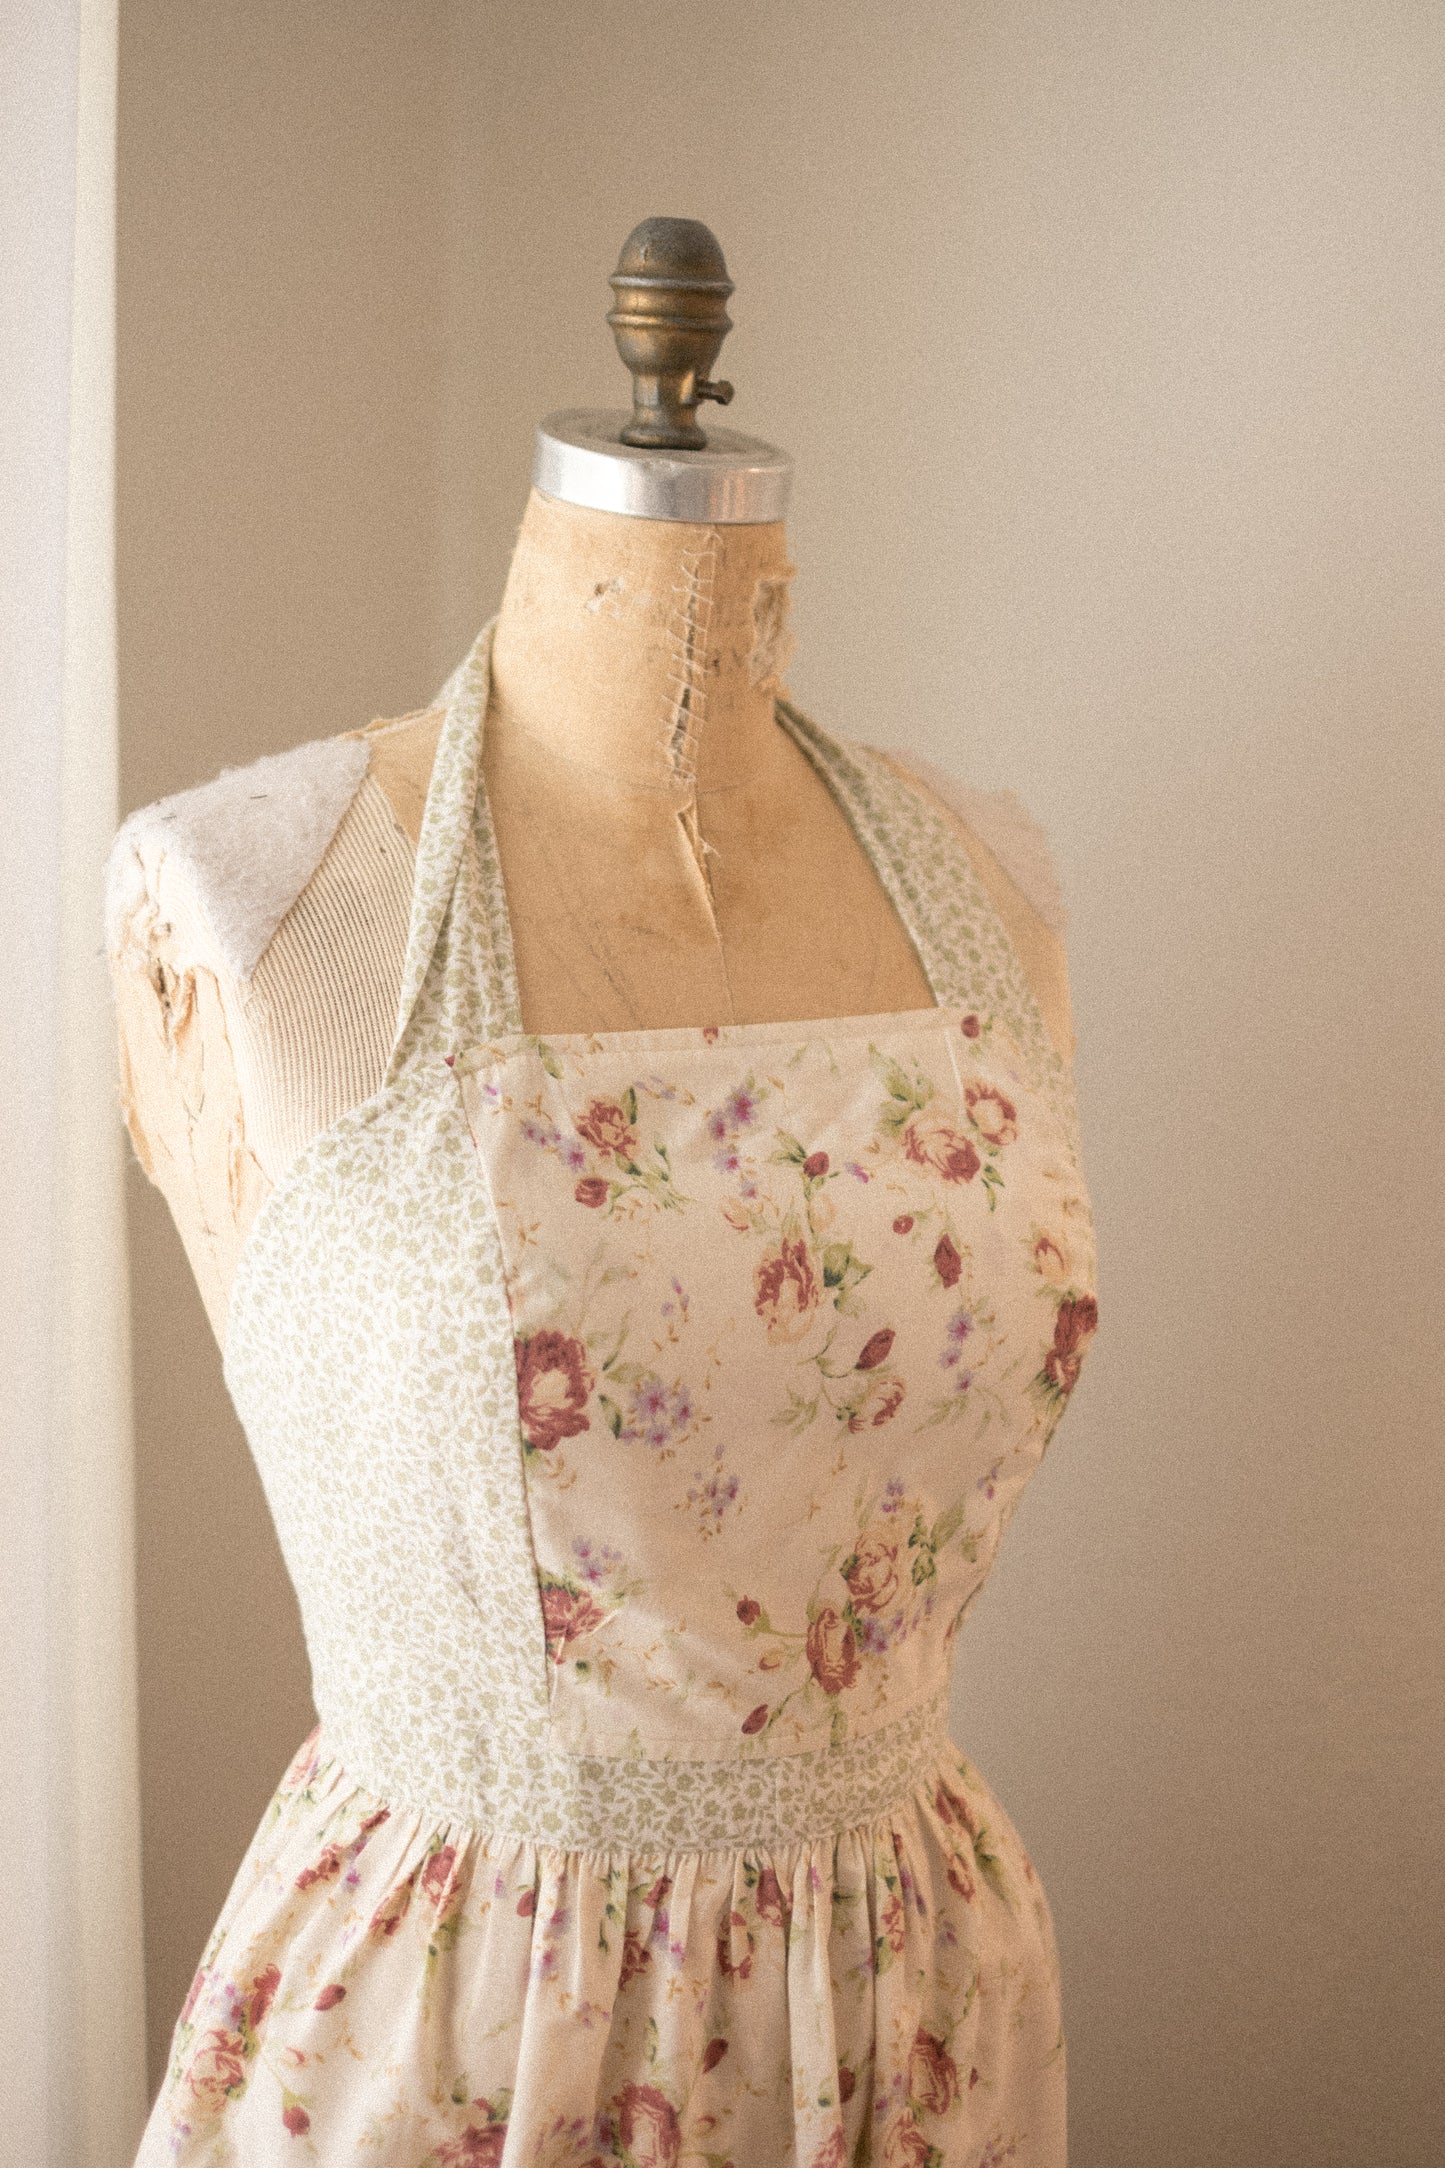 Handmade vintage floral apron - cottagecore